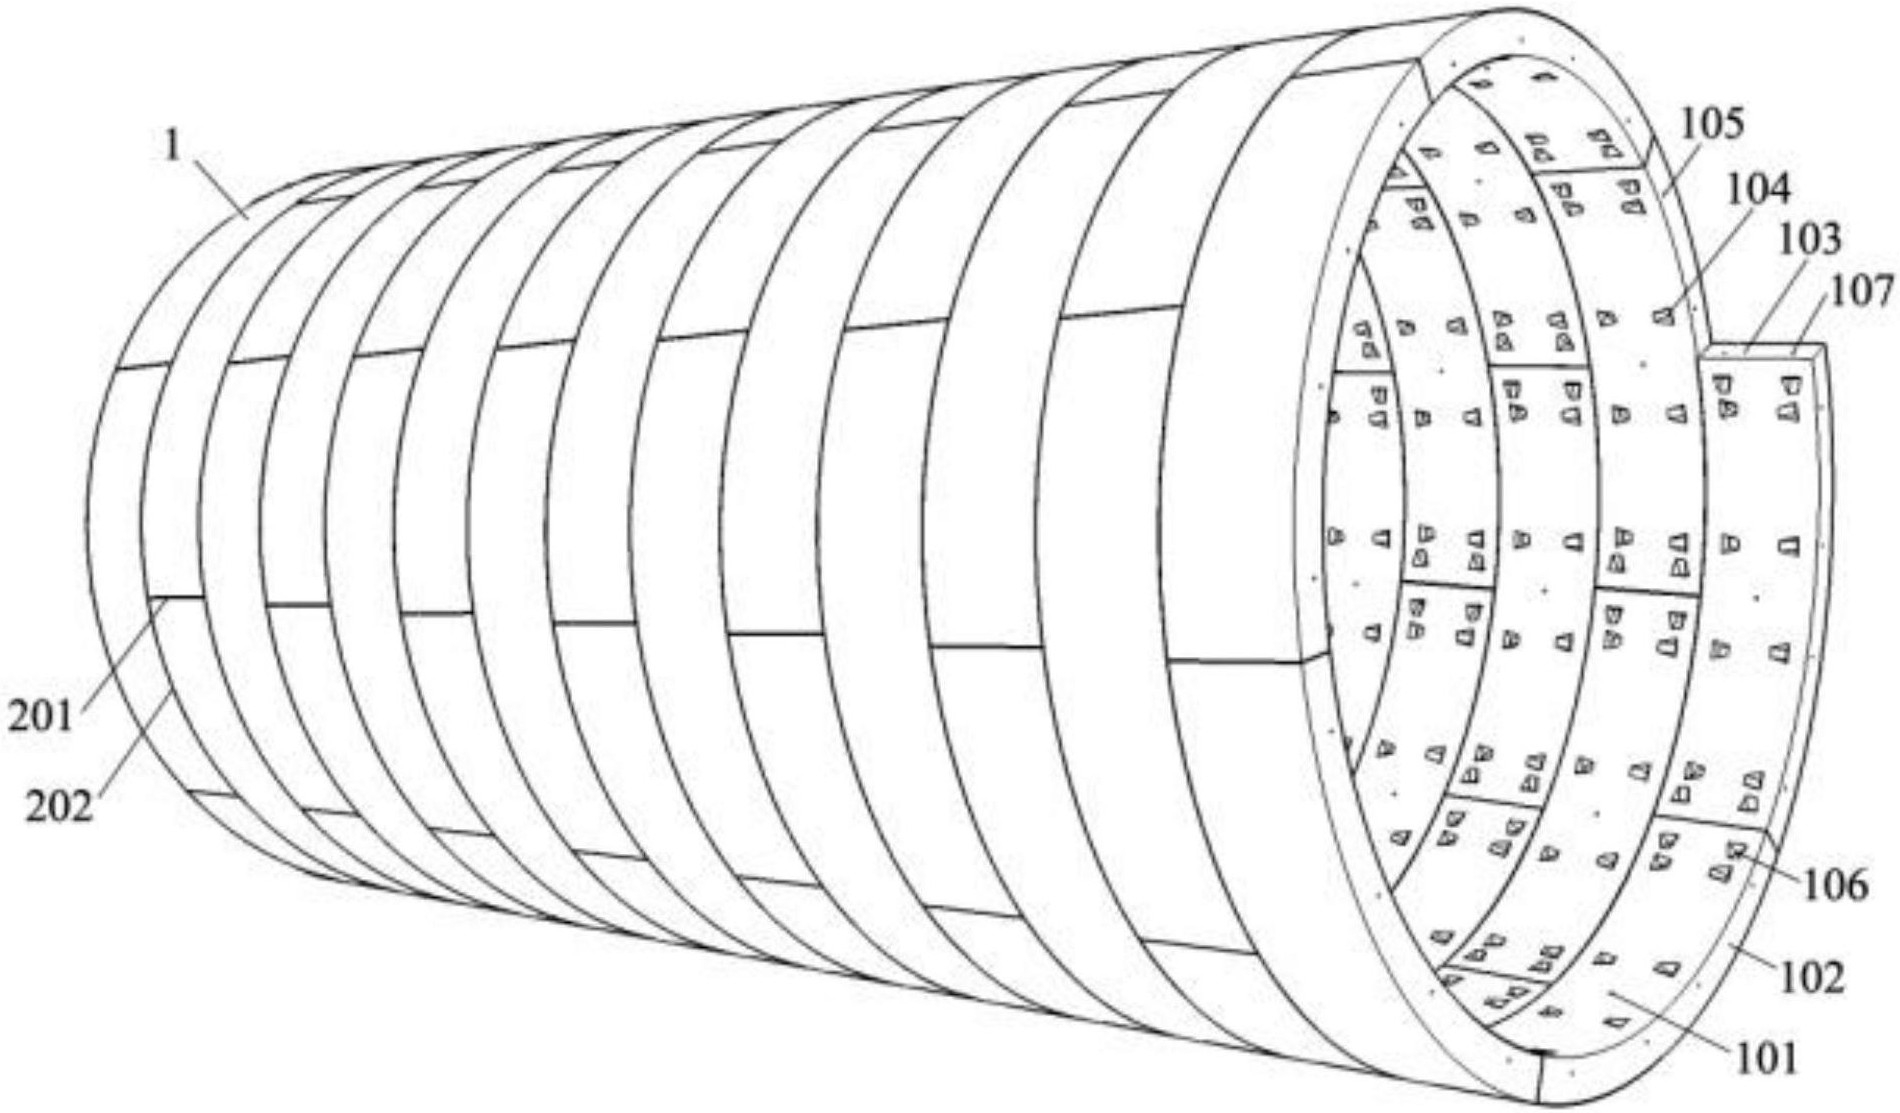 cn108457669a_一种螺线形走向盾构隧道衬砌管片及其施工方法在审